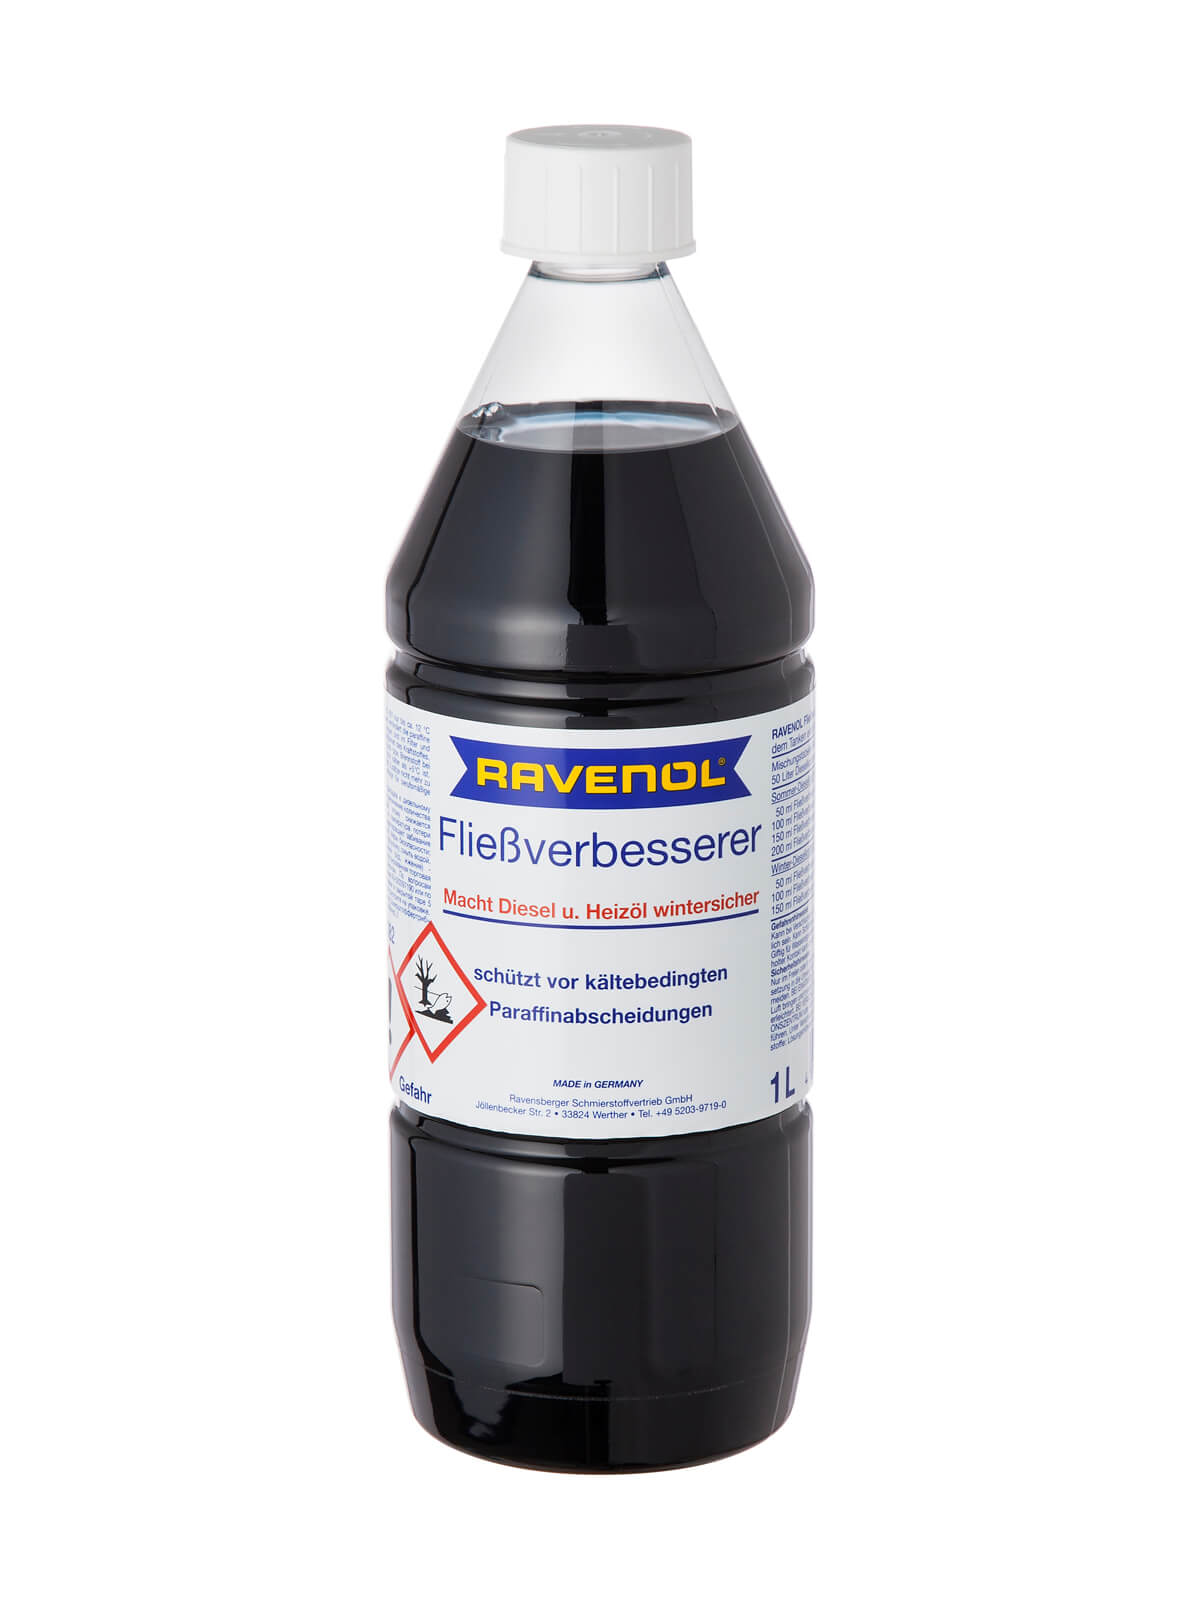 3L 3 Liter RAVENOL 1430220-001 Fließverbesserer 1:1000 Diesel Heizöl  Frostschutz Frost Öl 